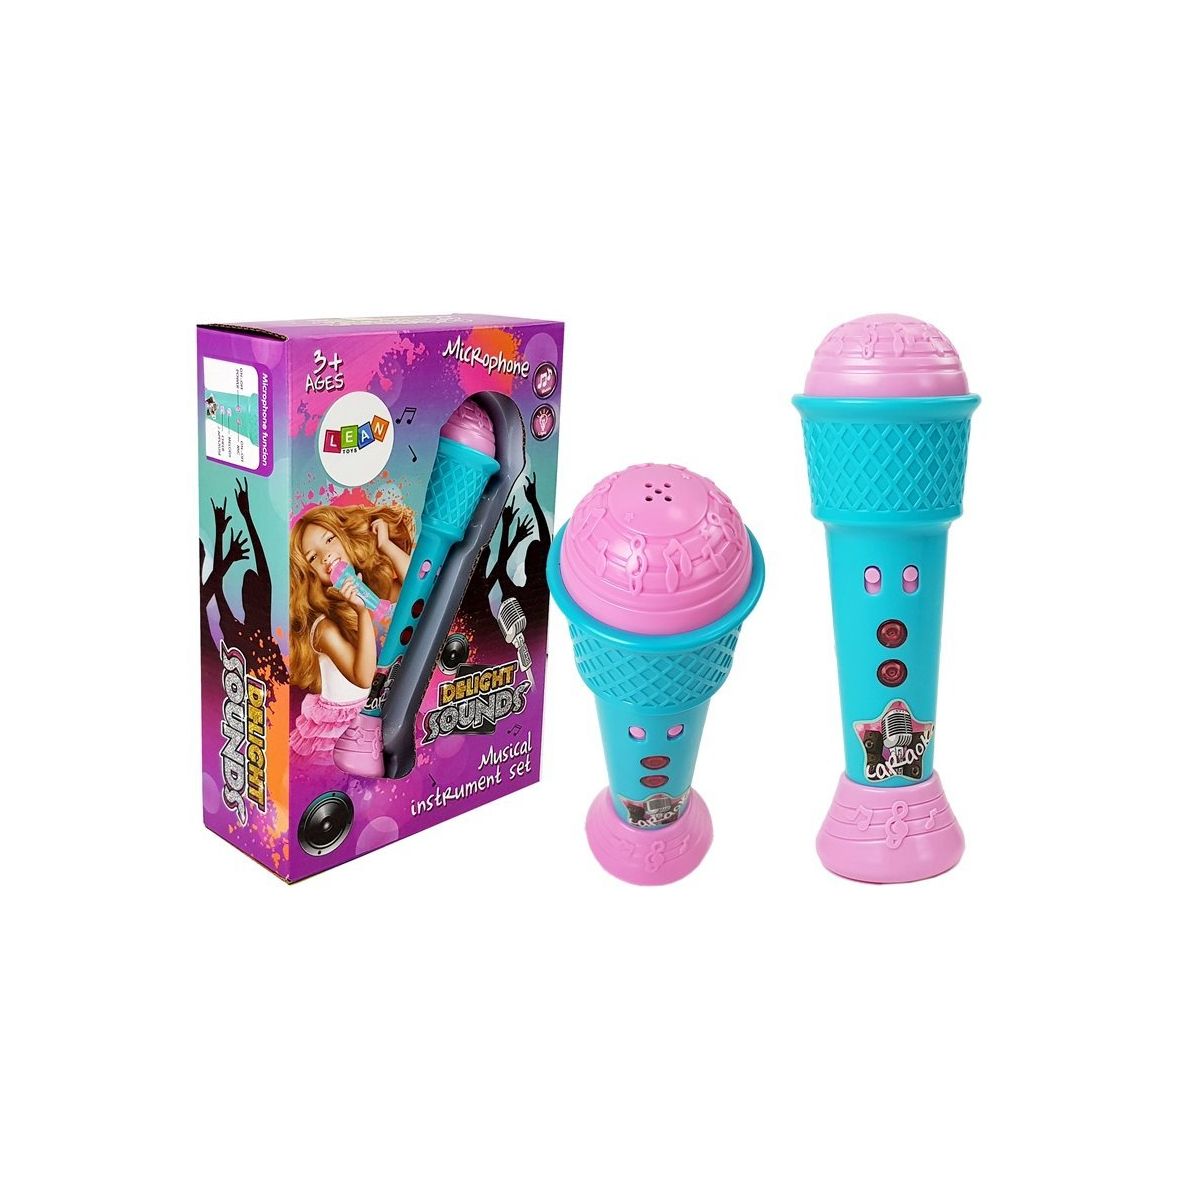 Mikrofon zabawkowy Dla Dzieci Karaoke MP3 Kokardka Głośnik Lean (7819)